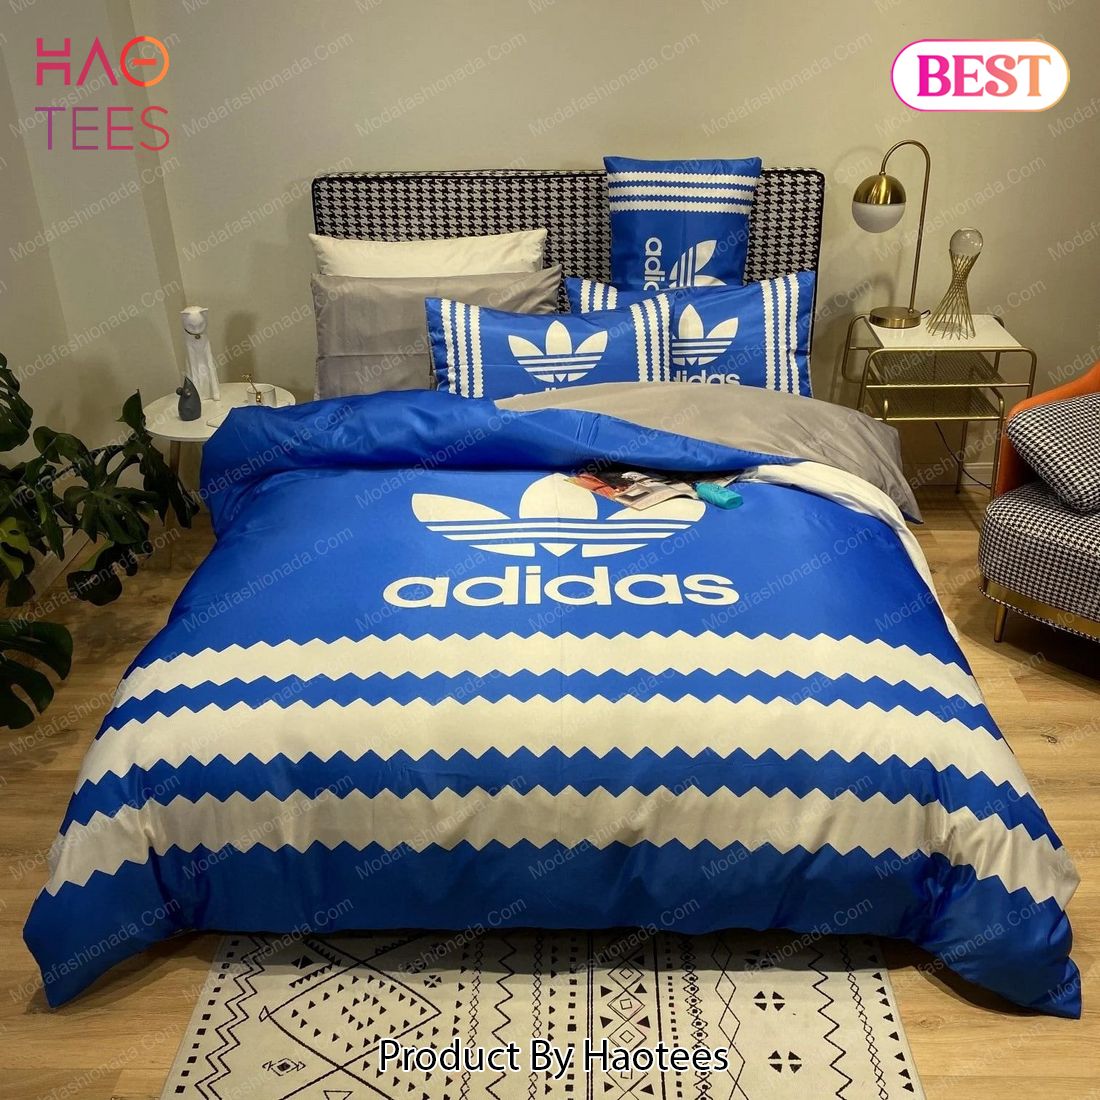 Buy Adidas Luxury Brand 01 Bedding Set Bed Sets, Bedroom Sets, Comforter Sets, Duvet Cover, Bedspread